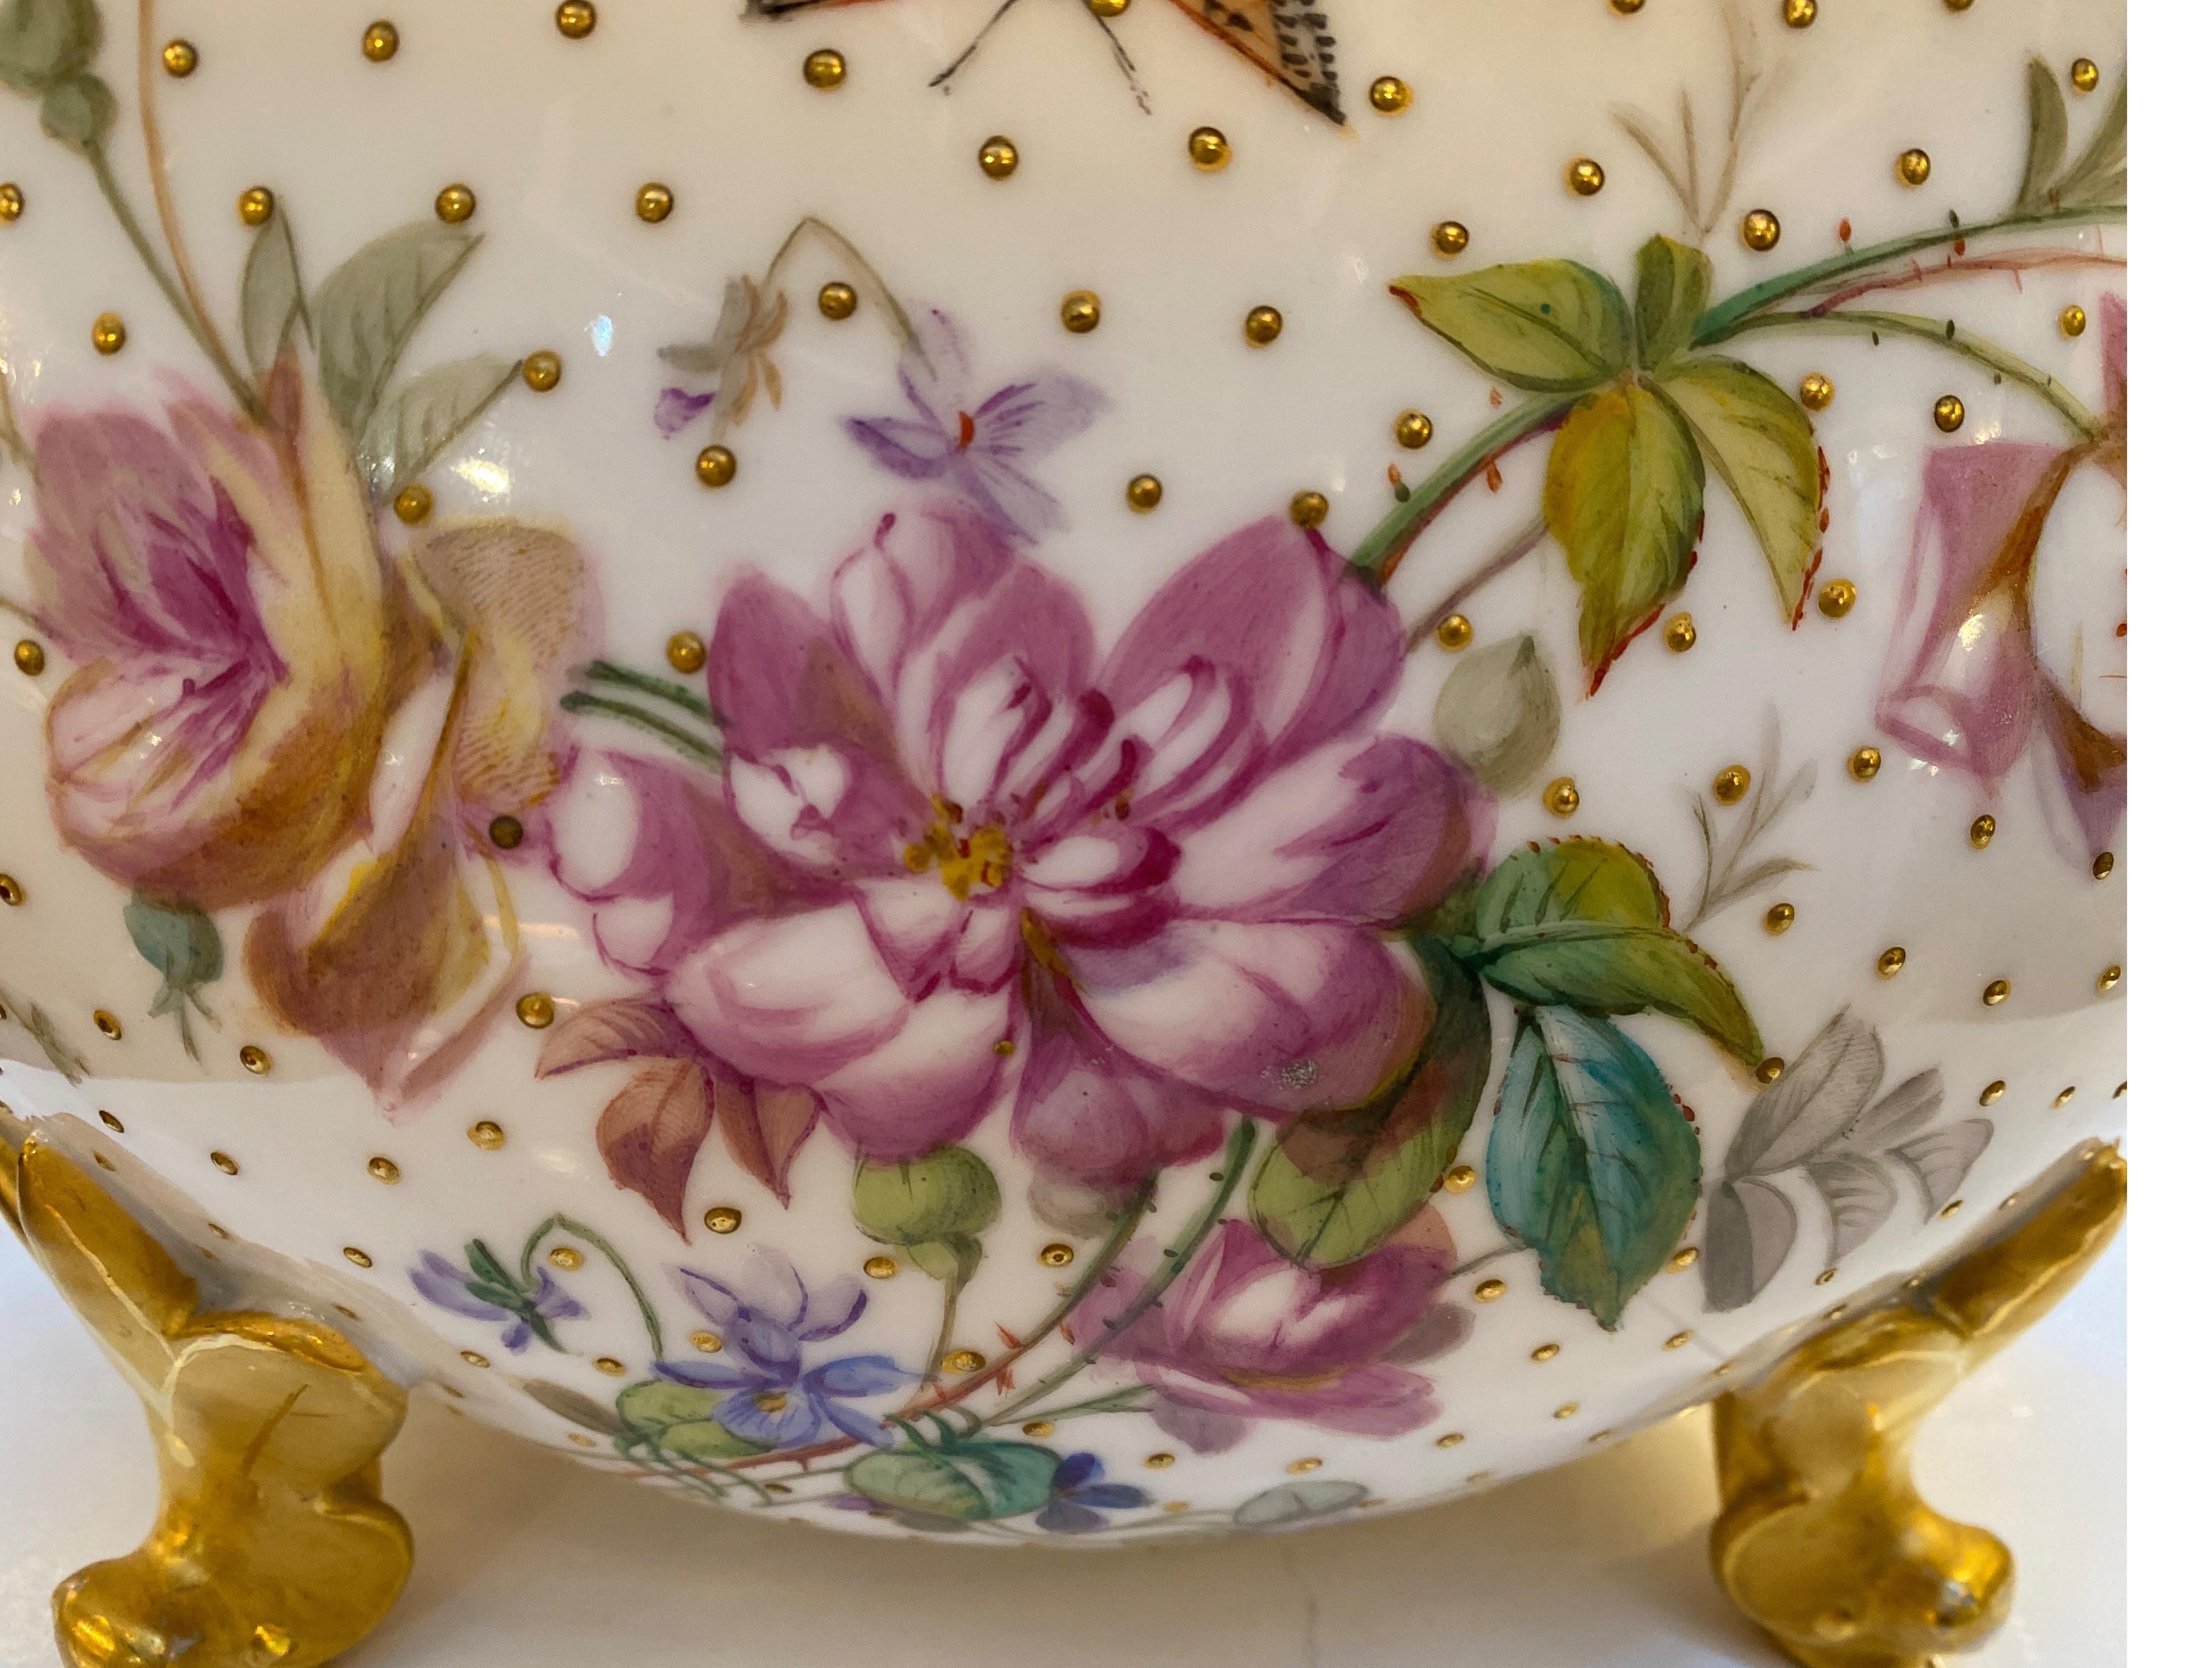 Elegant vase sur pied de forme ovale en porcelaine peint à la main avec décoration florale. La bordure dorée perlée est ornée d'une peinture à la main florale sur toute sa surface, avec des perles en relief sur le corps. Quelques insectes et